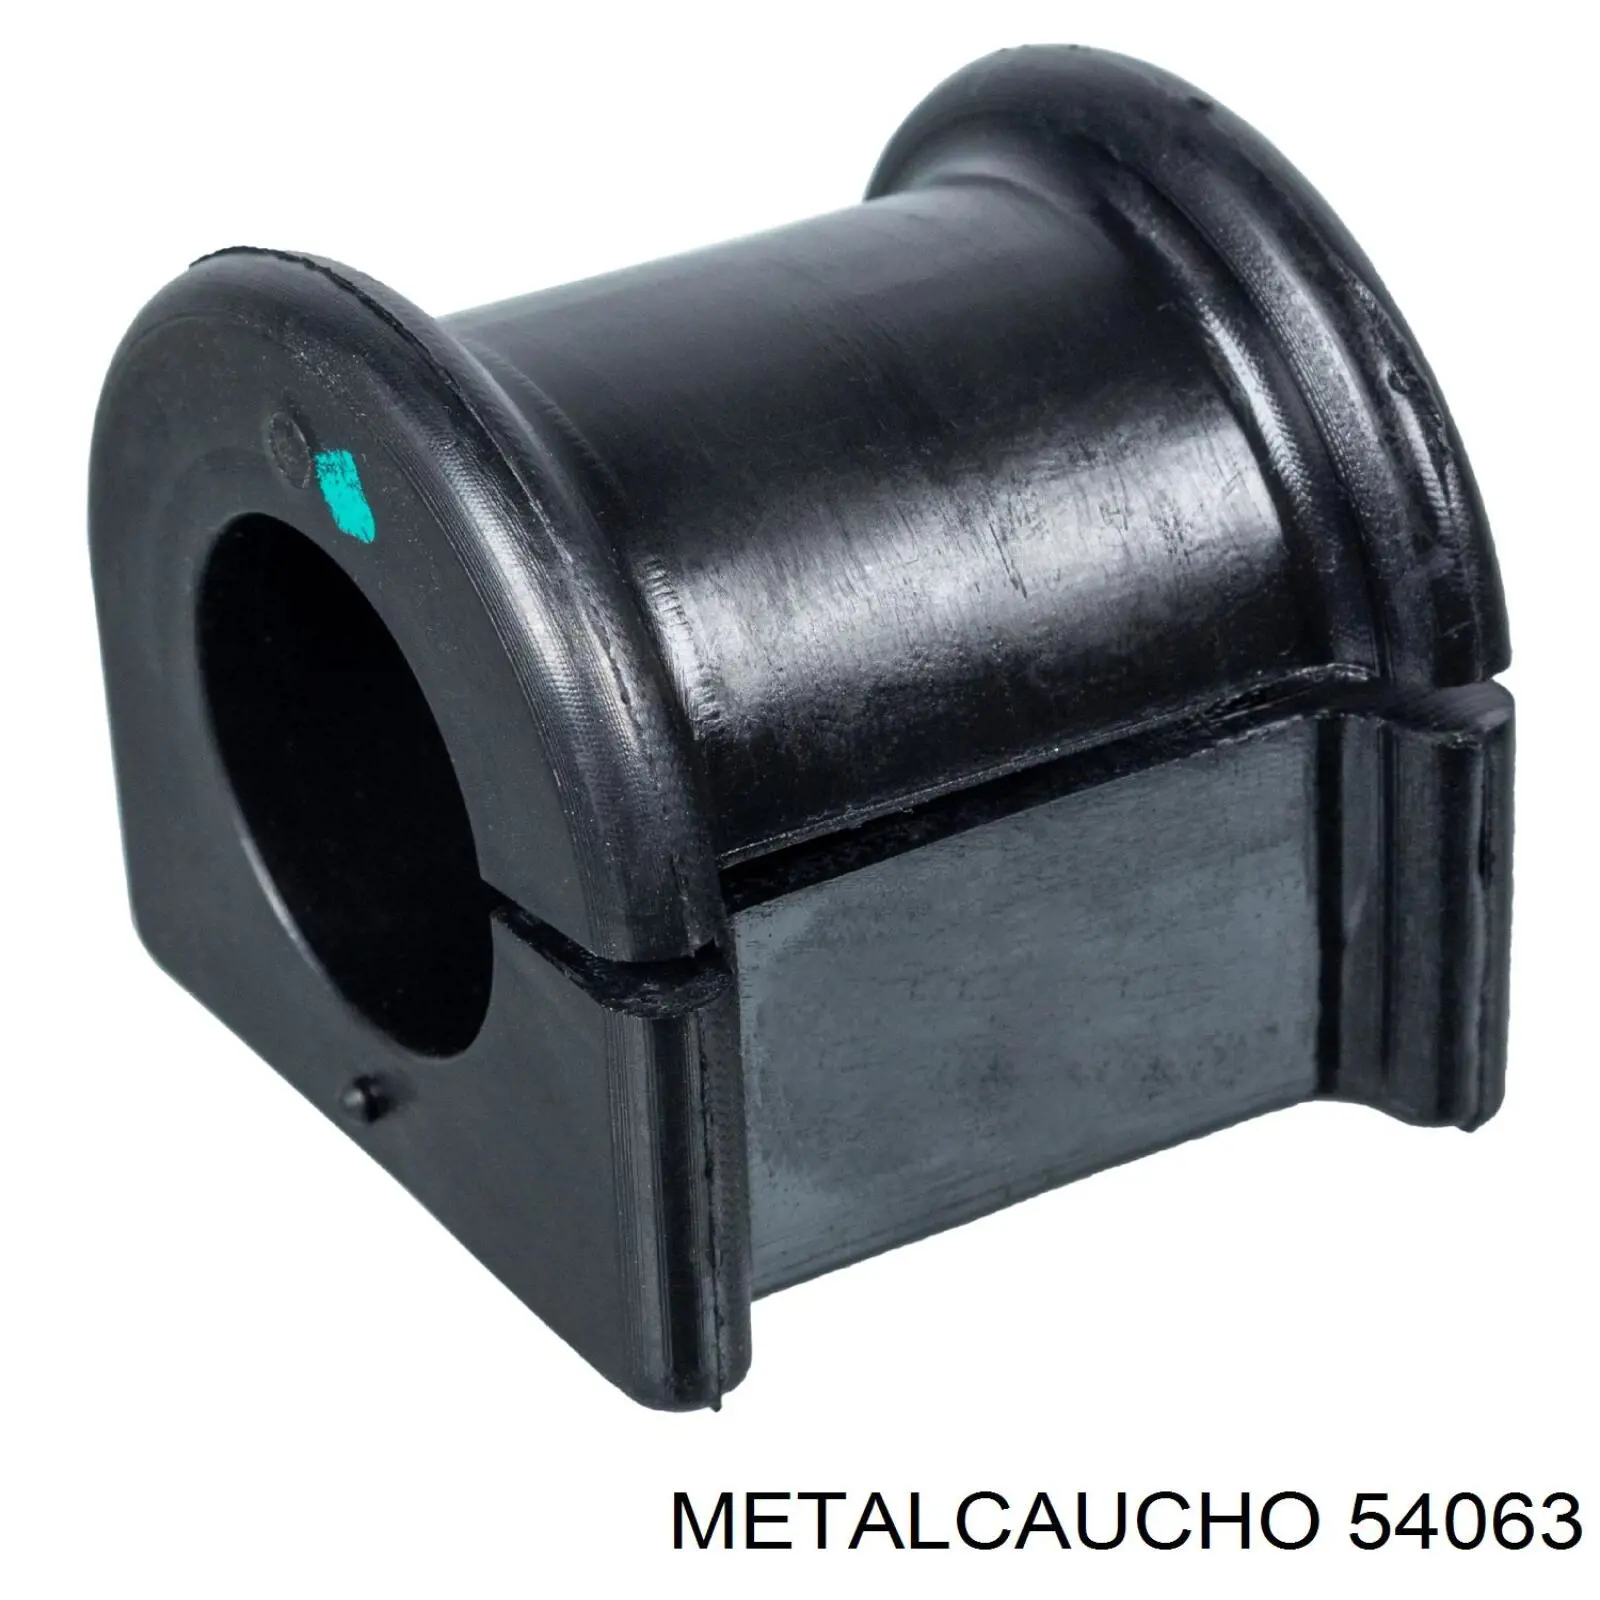 54063 Metalcaucho coxim (suporte direito dianteiro de motor)